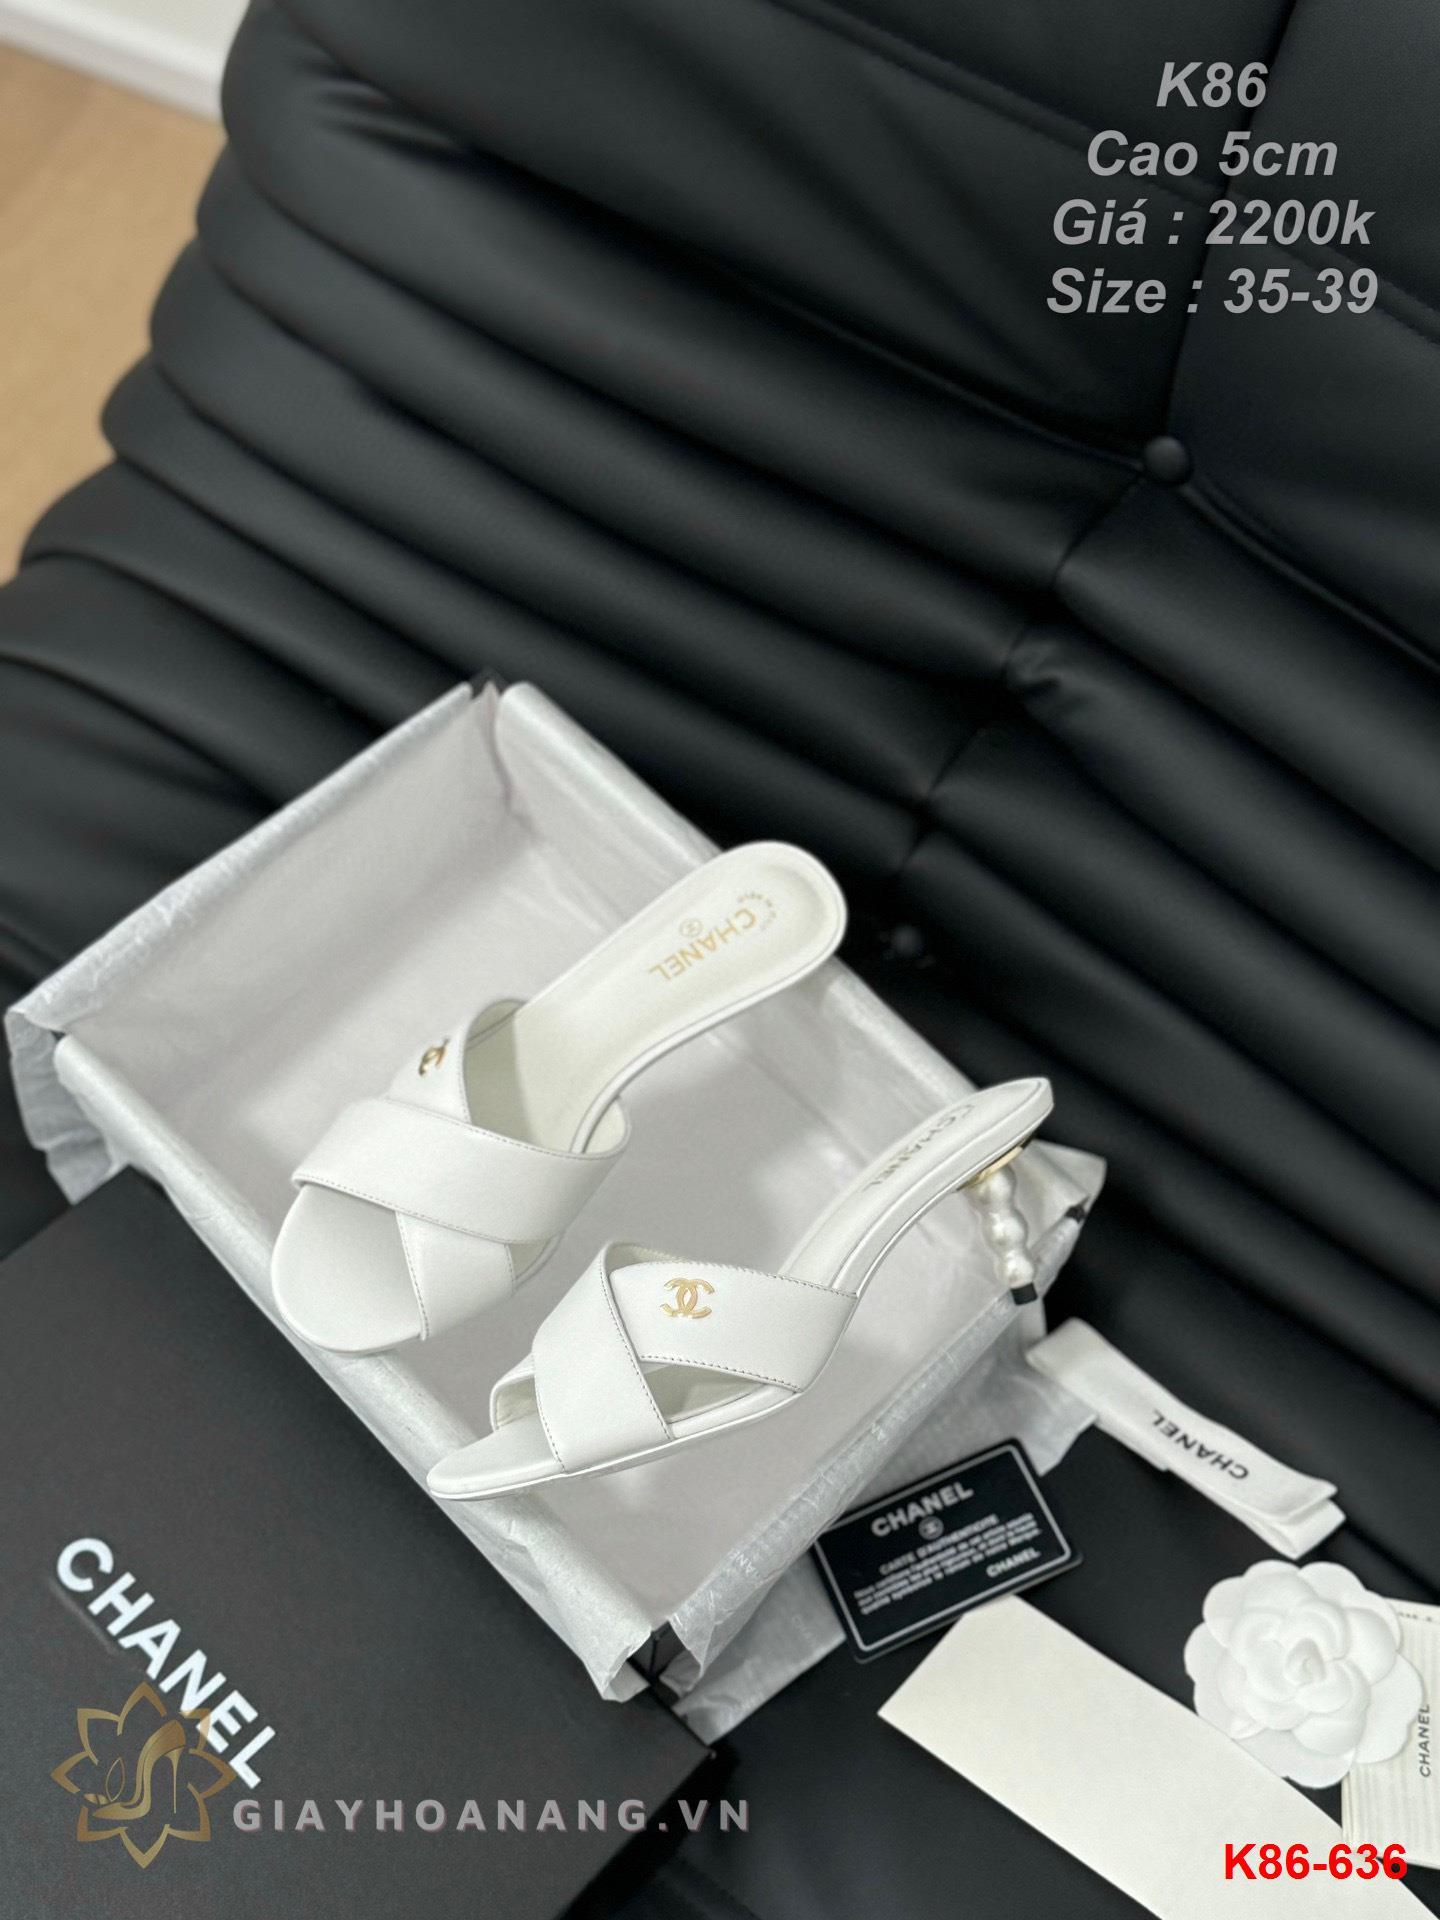 K86-636 Chanel dép cao gót 5cm siêu cấp